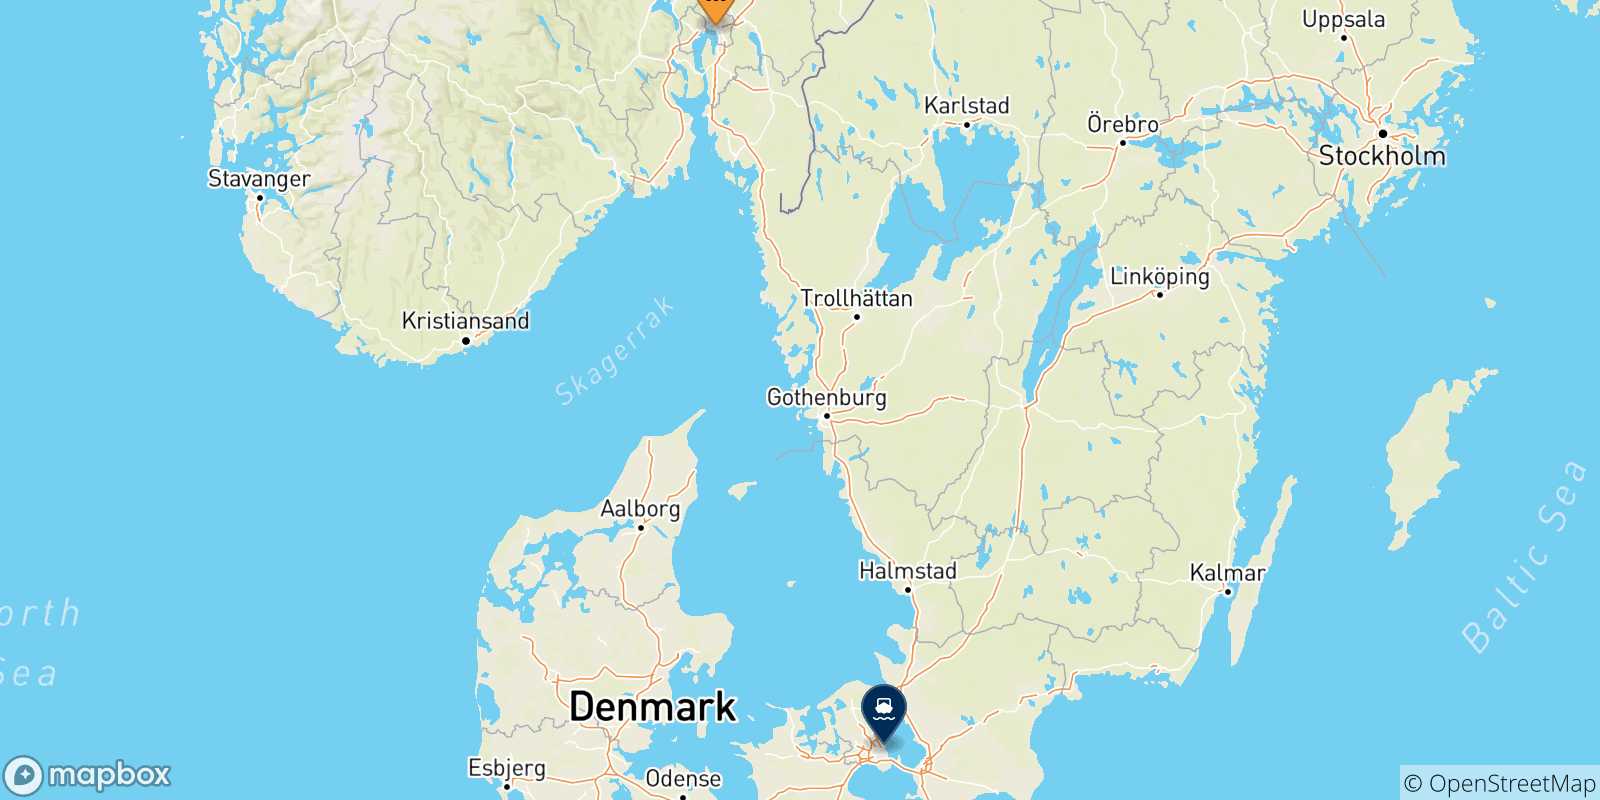 Mappa delle destinazioni raggiungibili dalla Norvegia